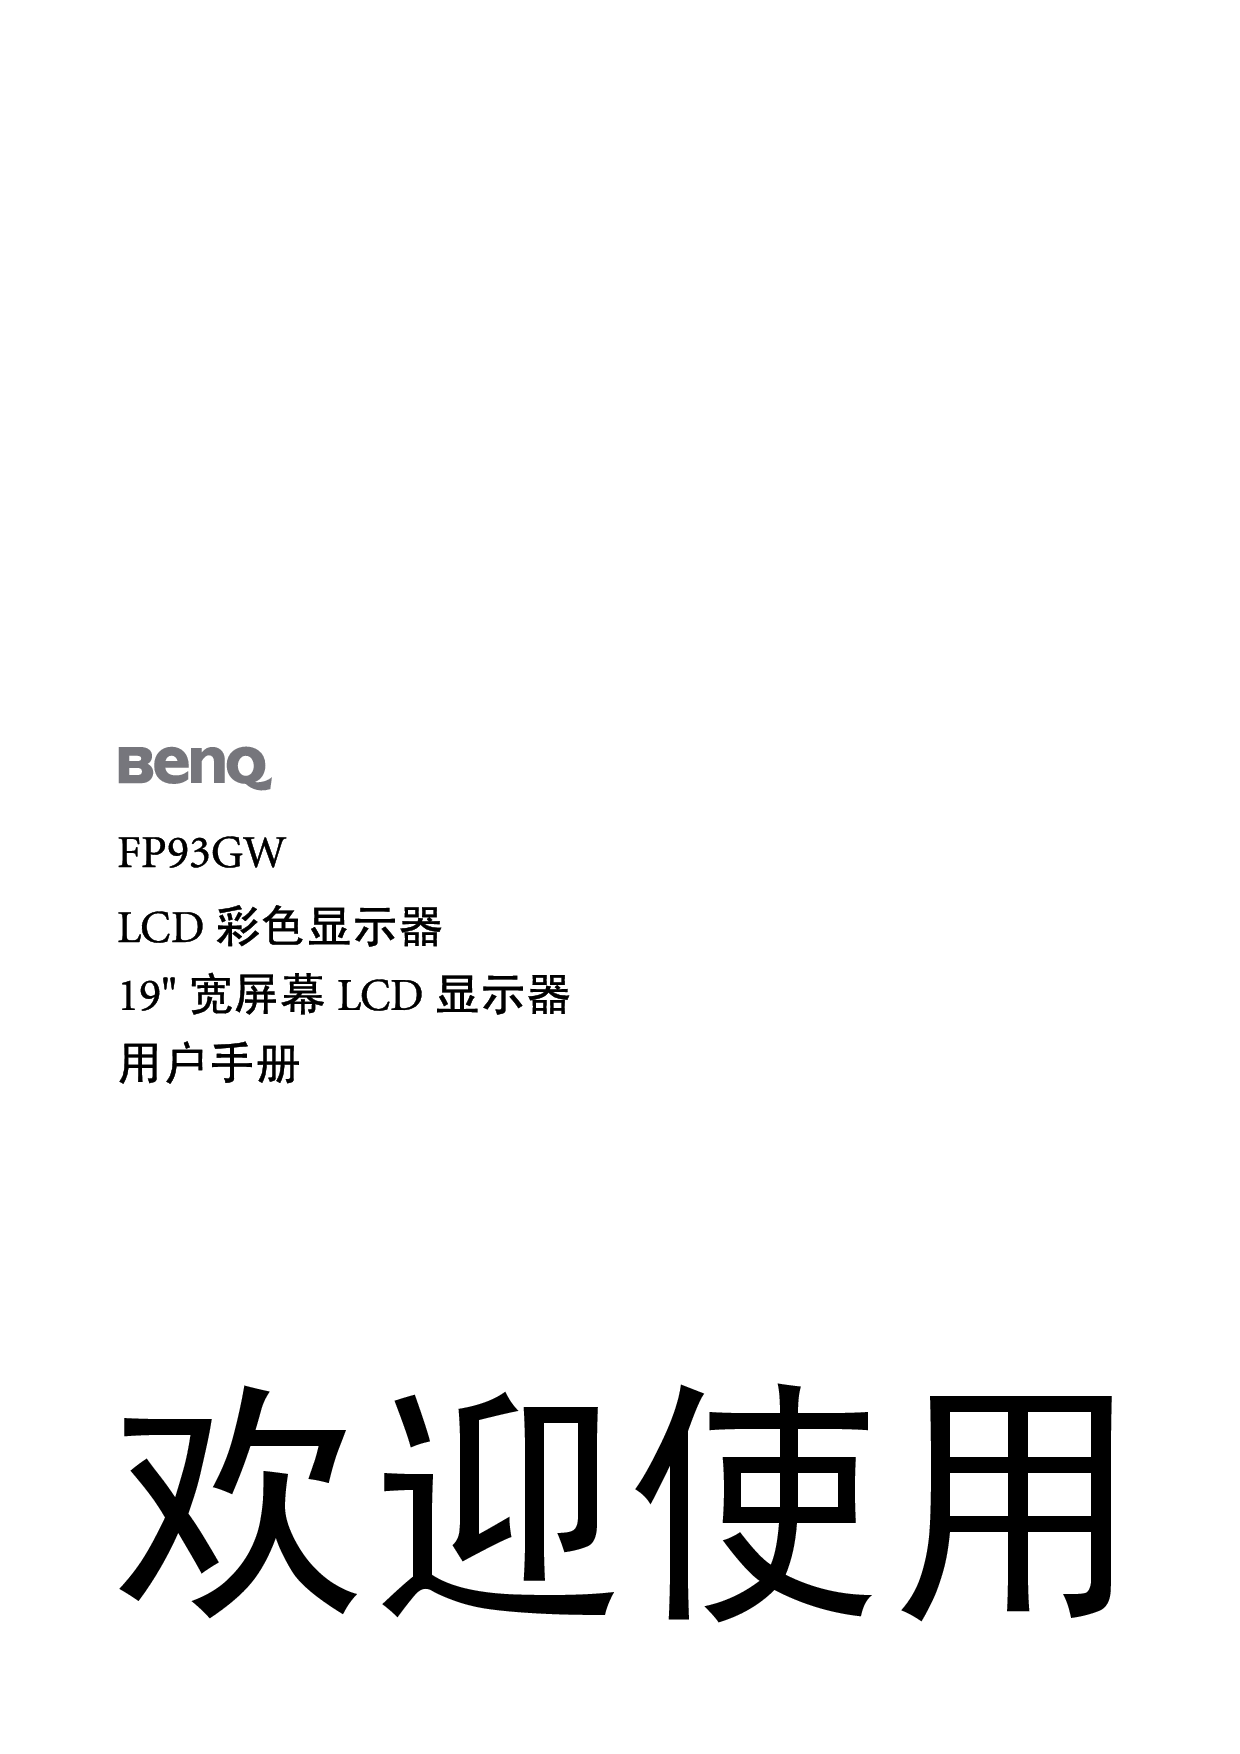 明基 Benq FP93GW 使用手册 封面